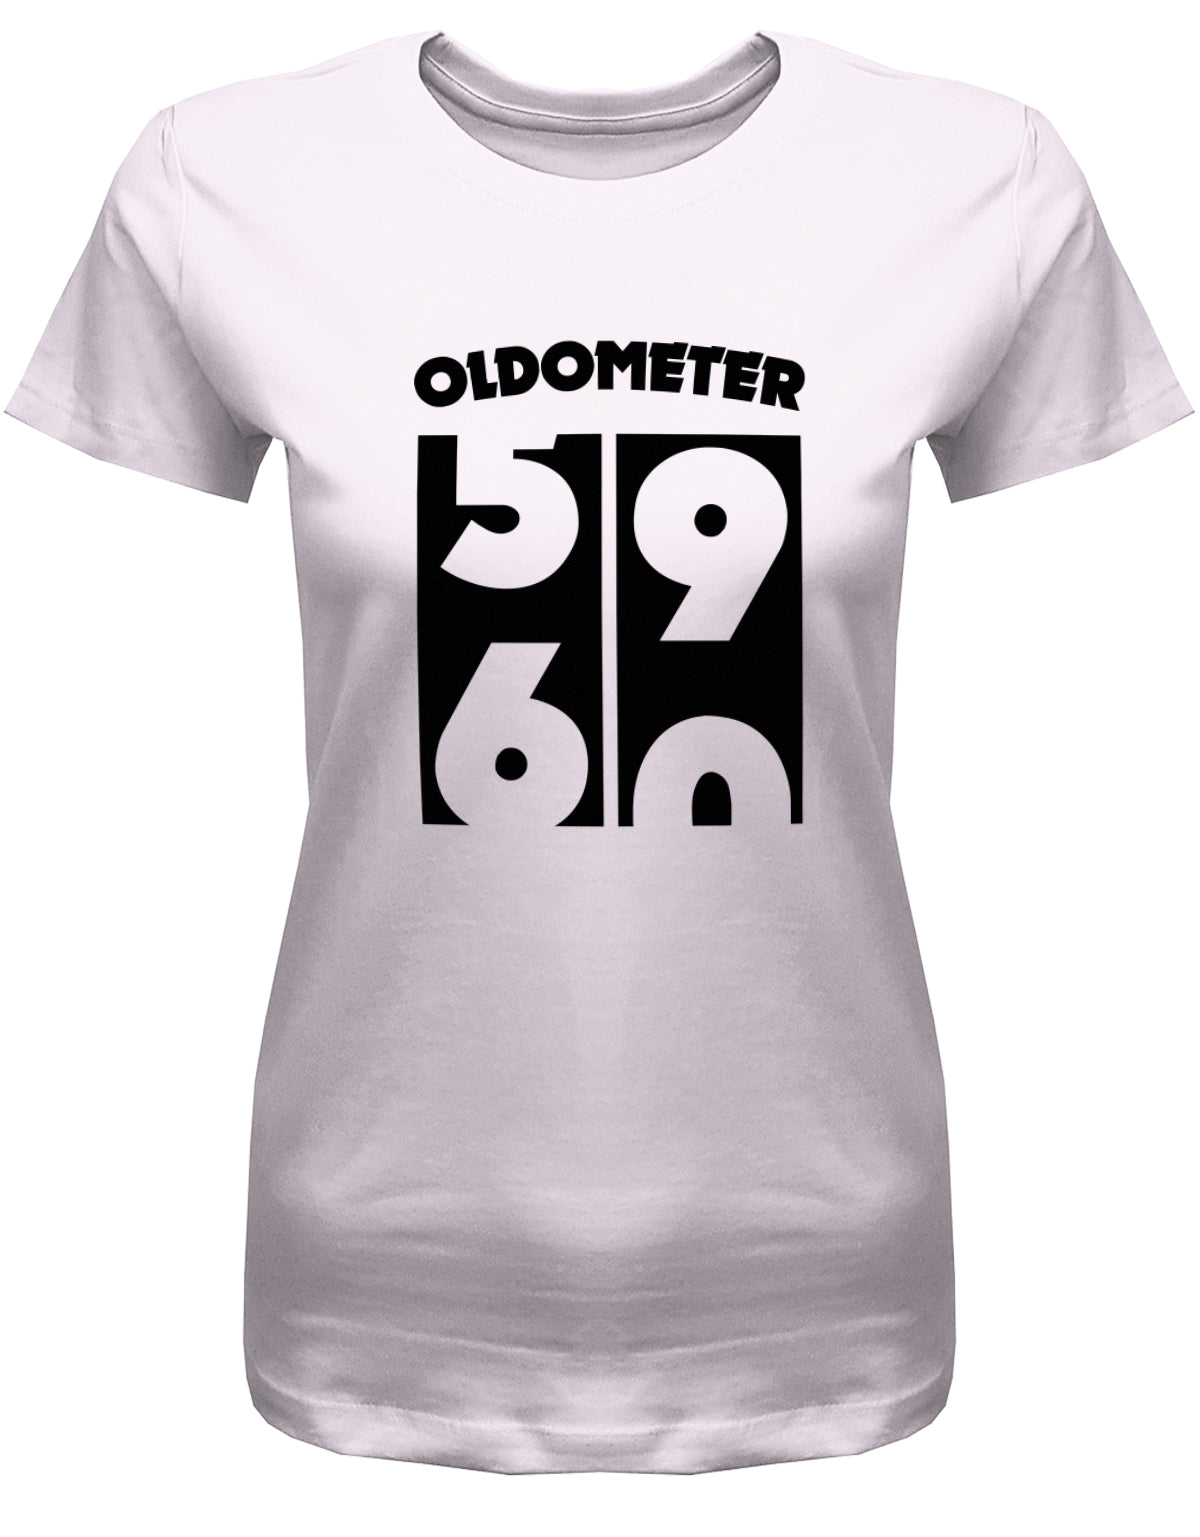 Lustiges T-Shirt zum 60 Geburtstag für die Frau Bedruckt mit Oldometer Wechsel von 59 zu 60 Jahren. Rosa